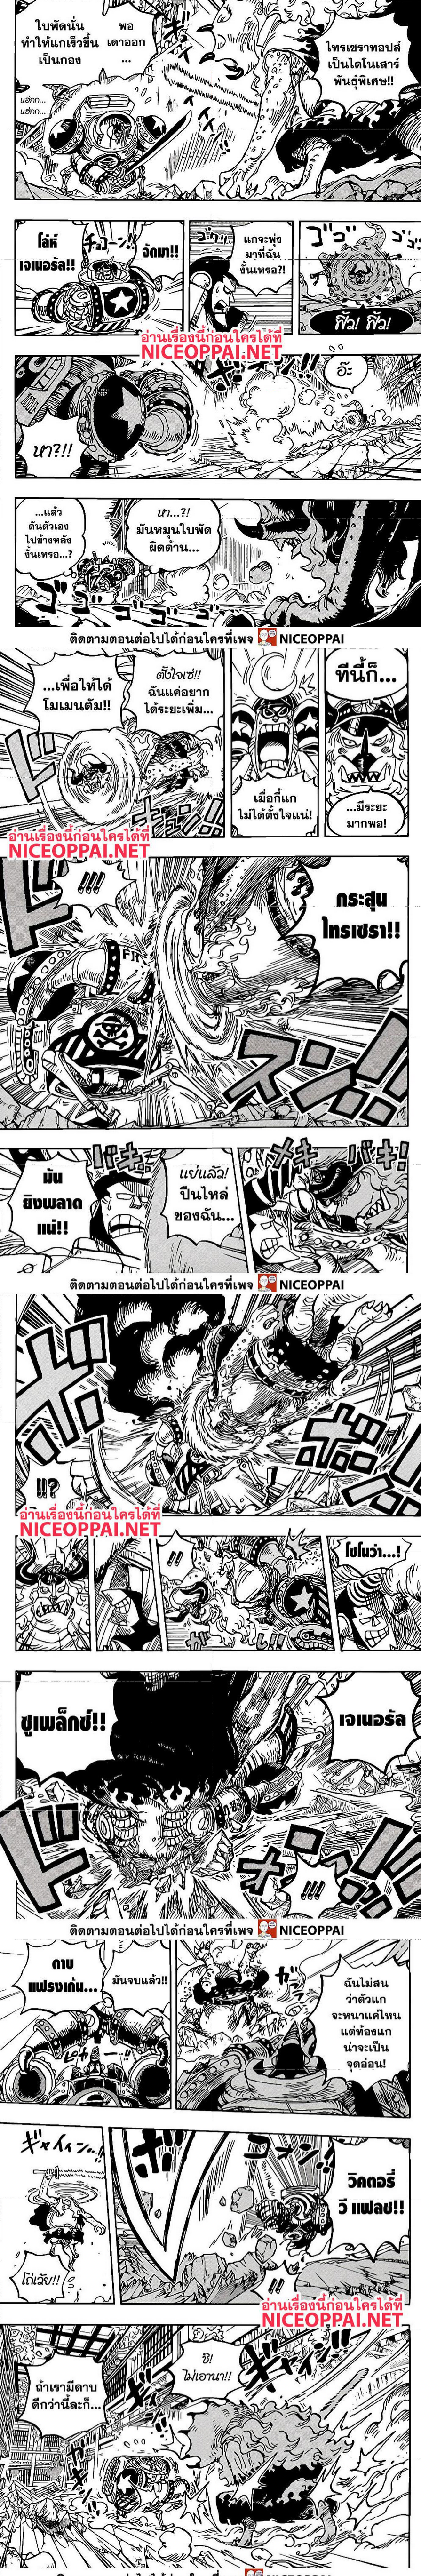 One Piece1019 (3)